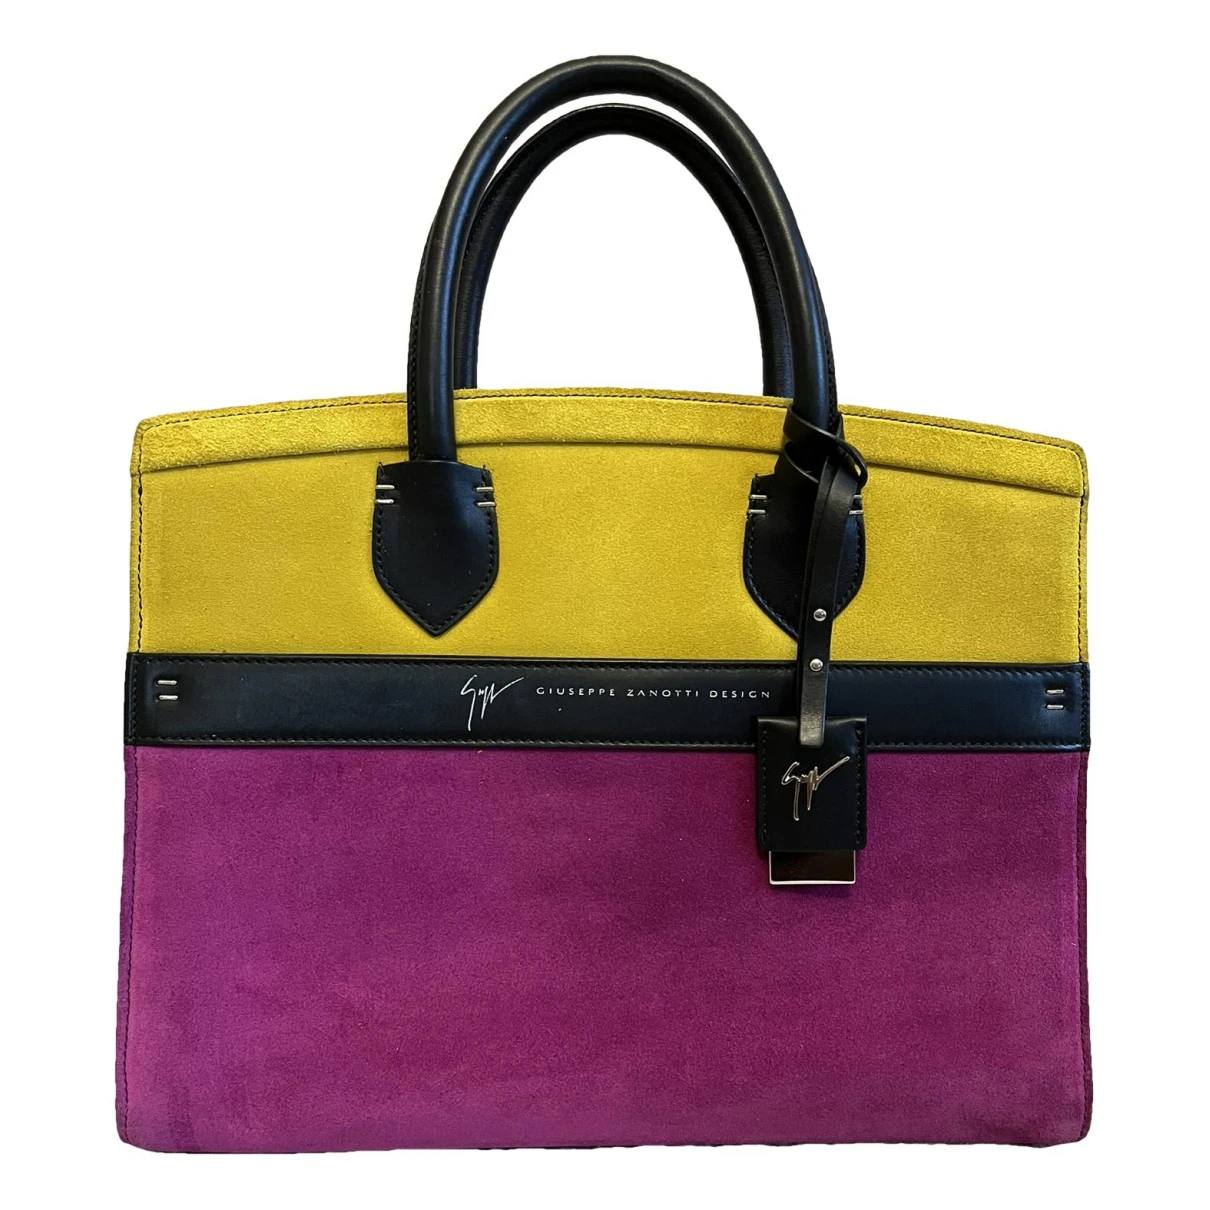 Pre-owned Giuseppe Zanotti Handbag In Pink